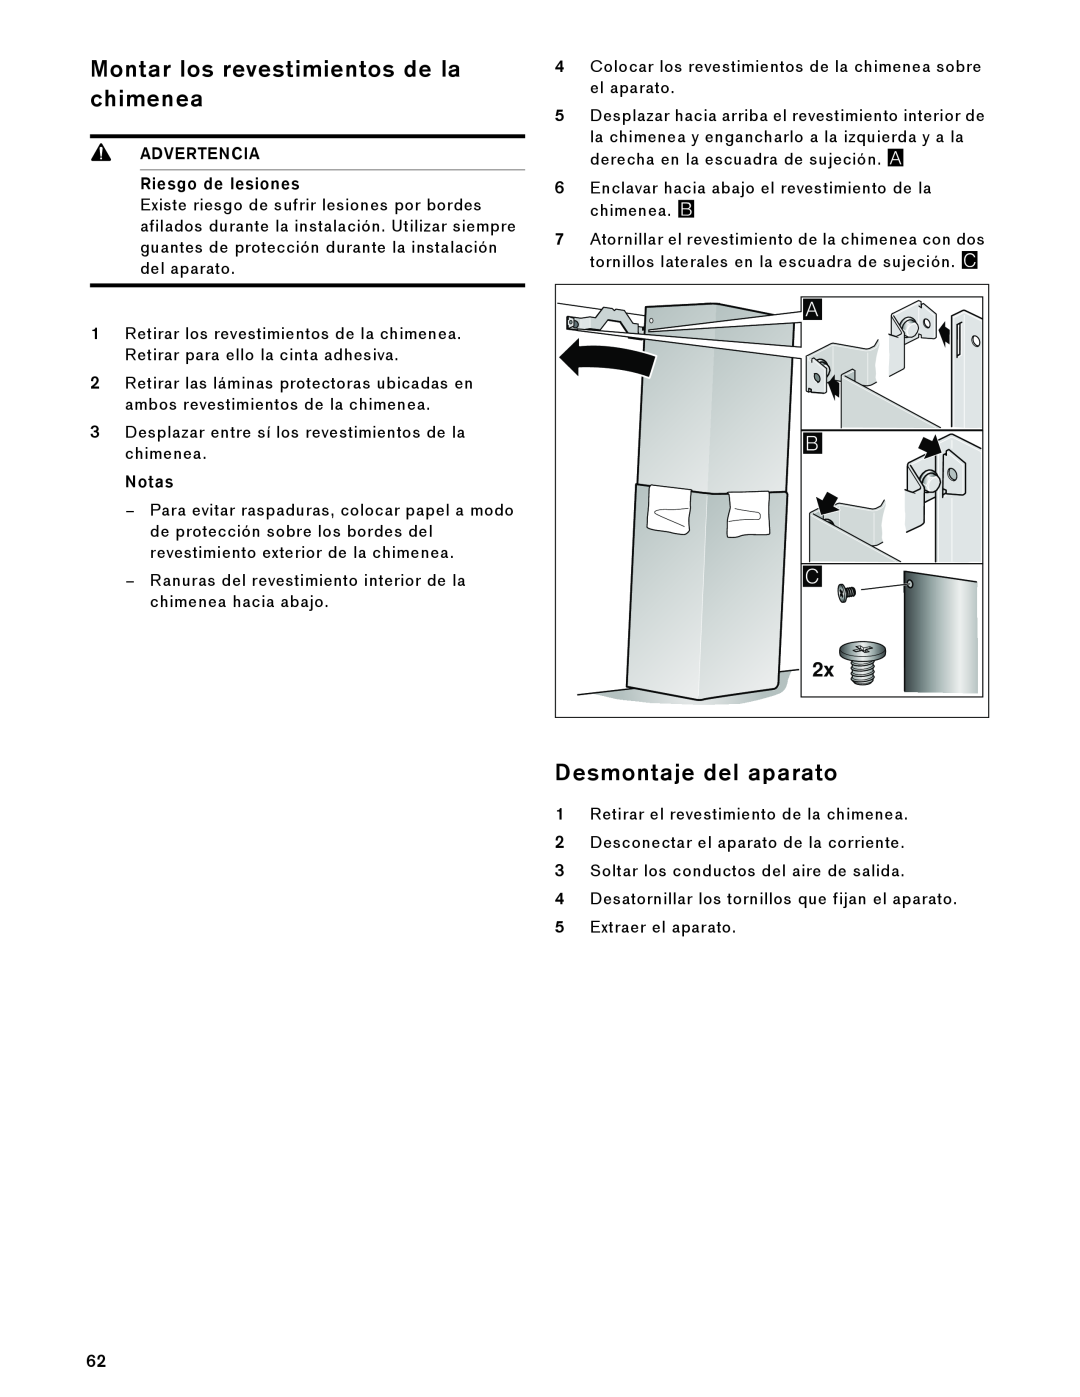 Gaggenau AW 230 790 manual Montar los revestimientos de la chimenea, Desmontaje del aparato, ADVERTENCIA Riesgo de lesiones 